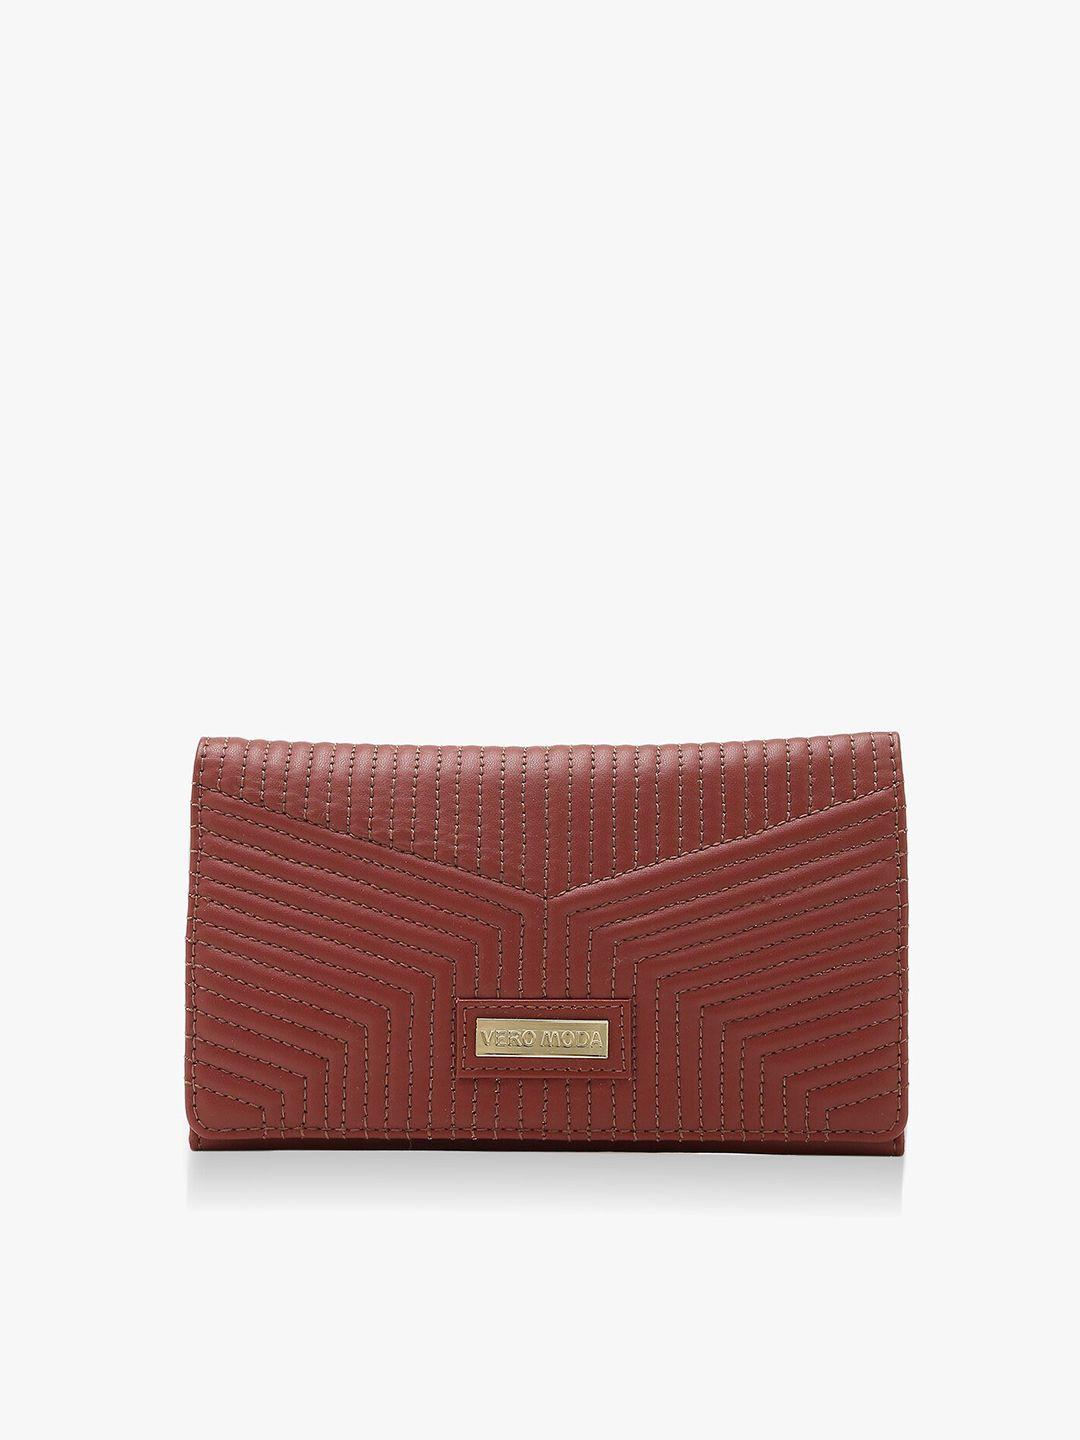 vero moda women two fold wallet